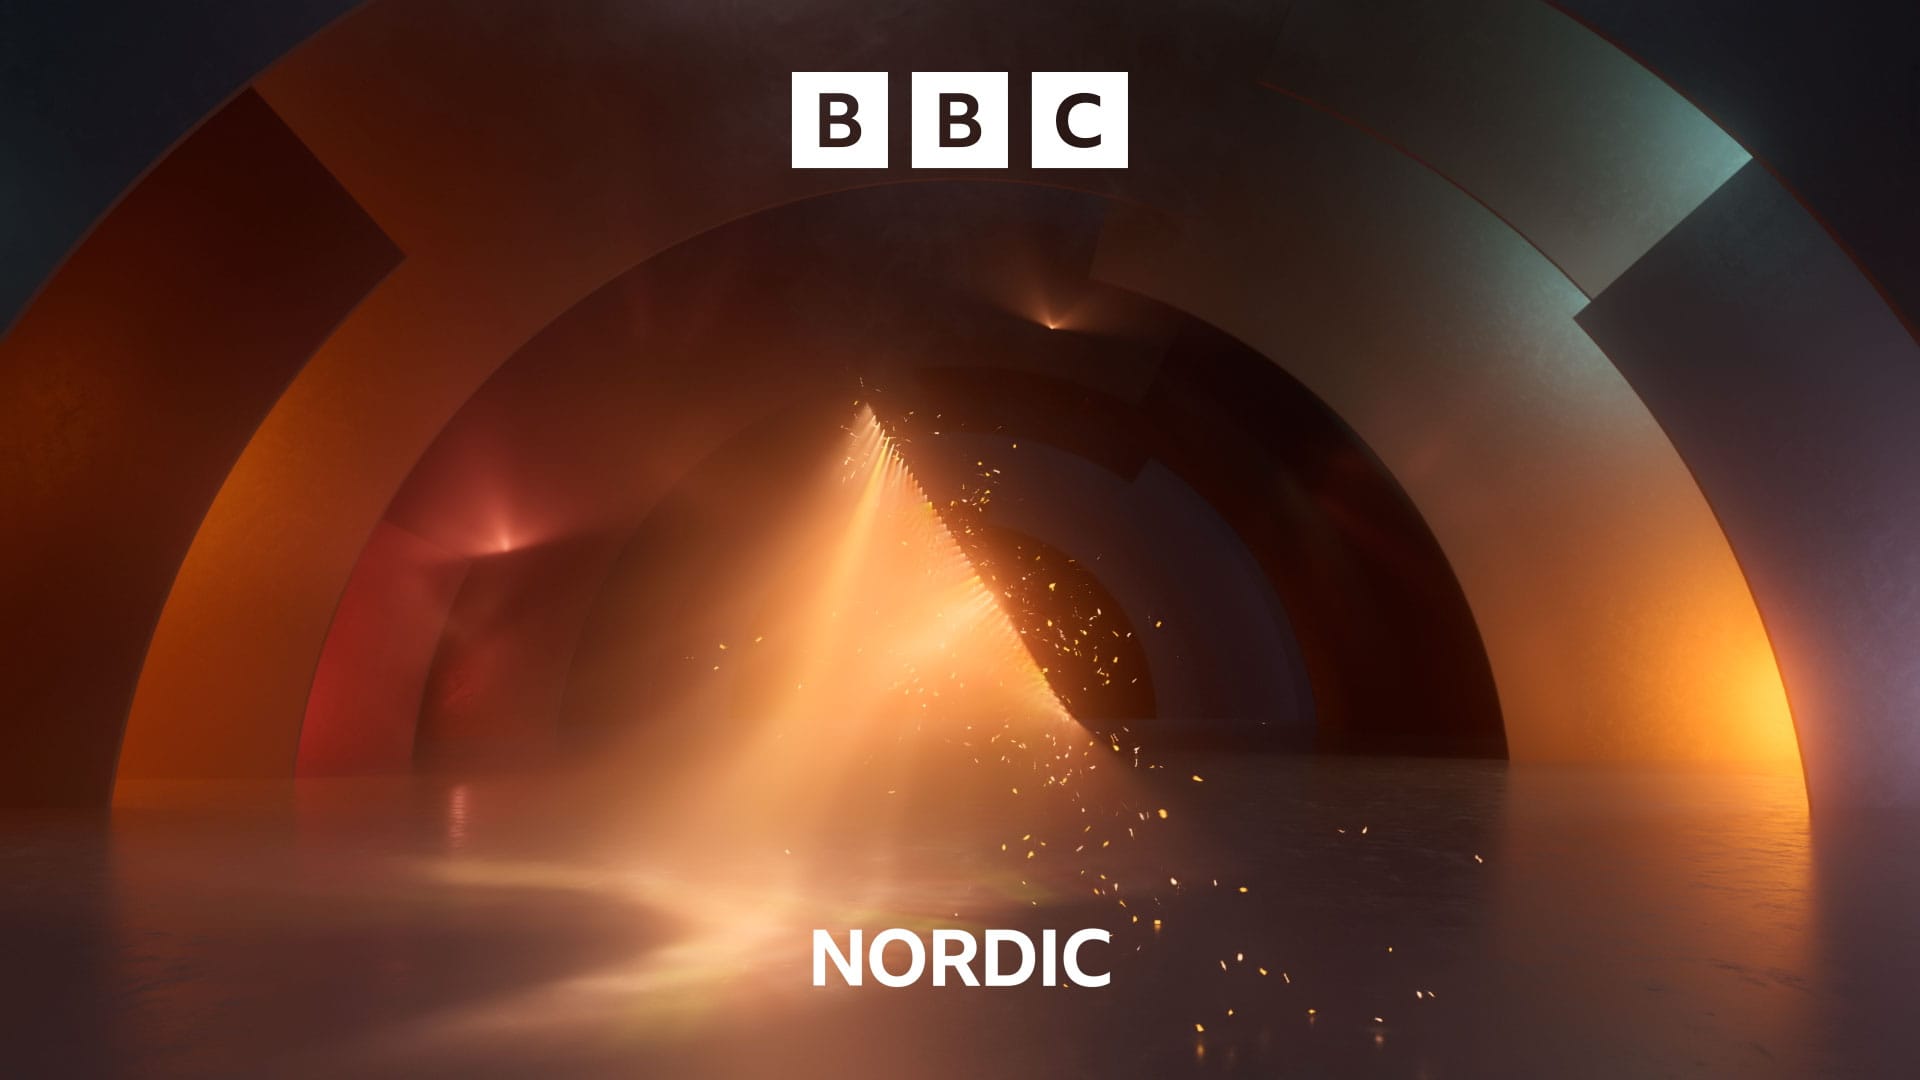 3d-motion-agency-london-BBC-Nordic-weareseventeen_0251.jpg